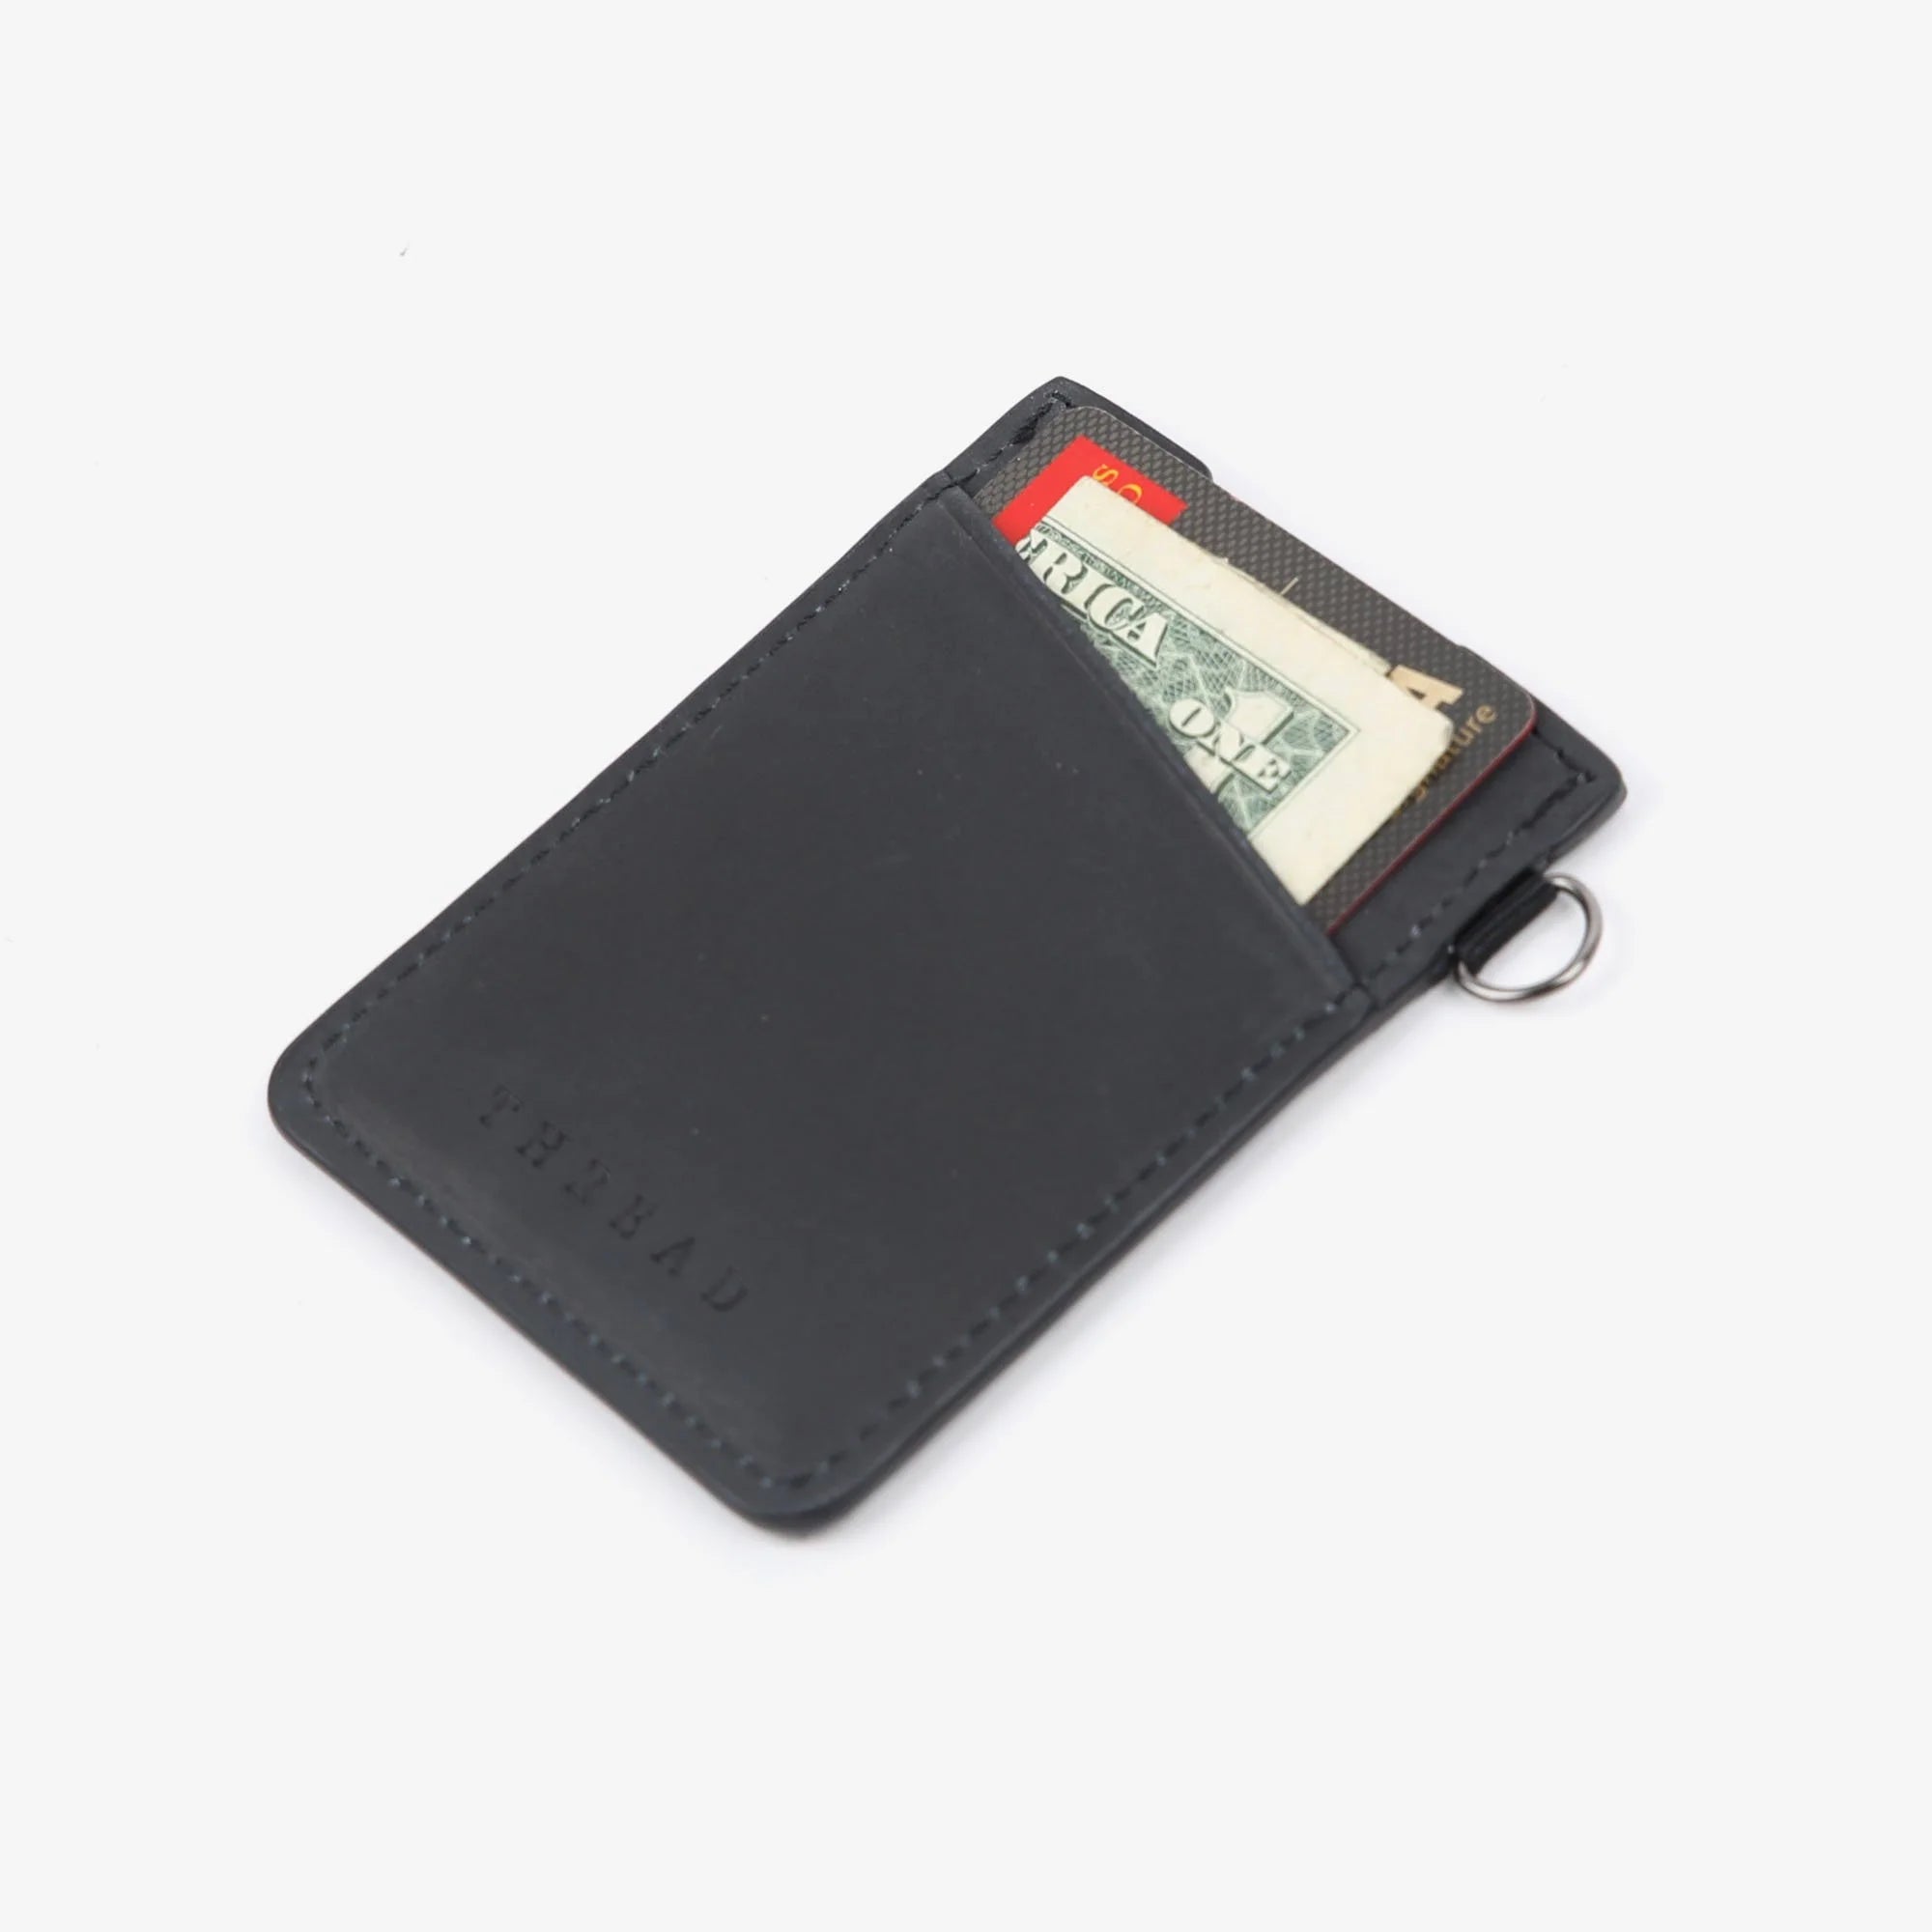 THREAD - Sanders Vertical Wallet